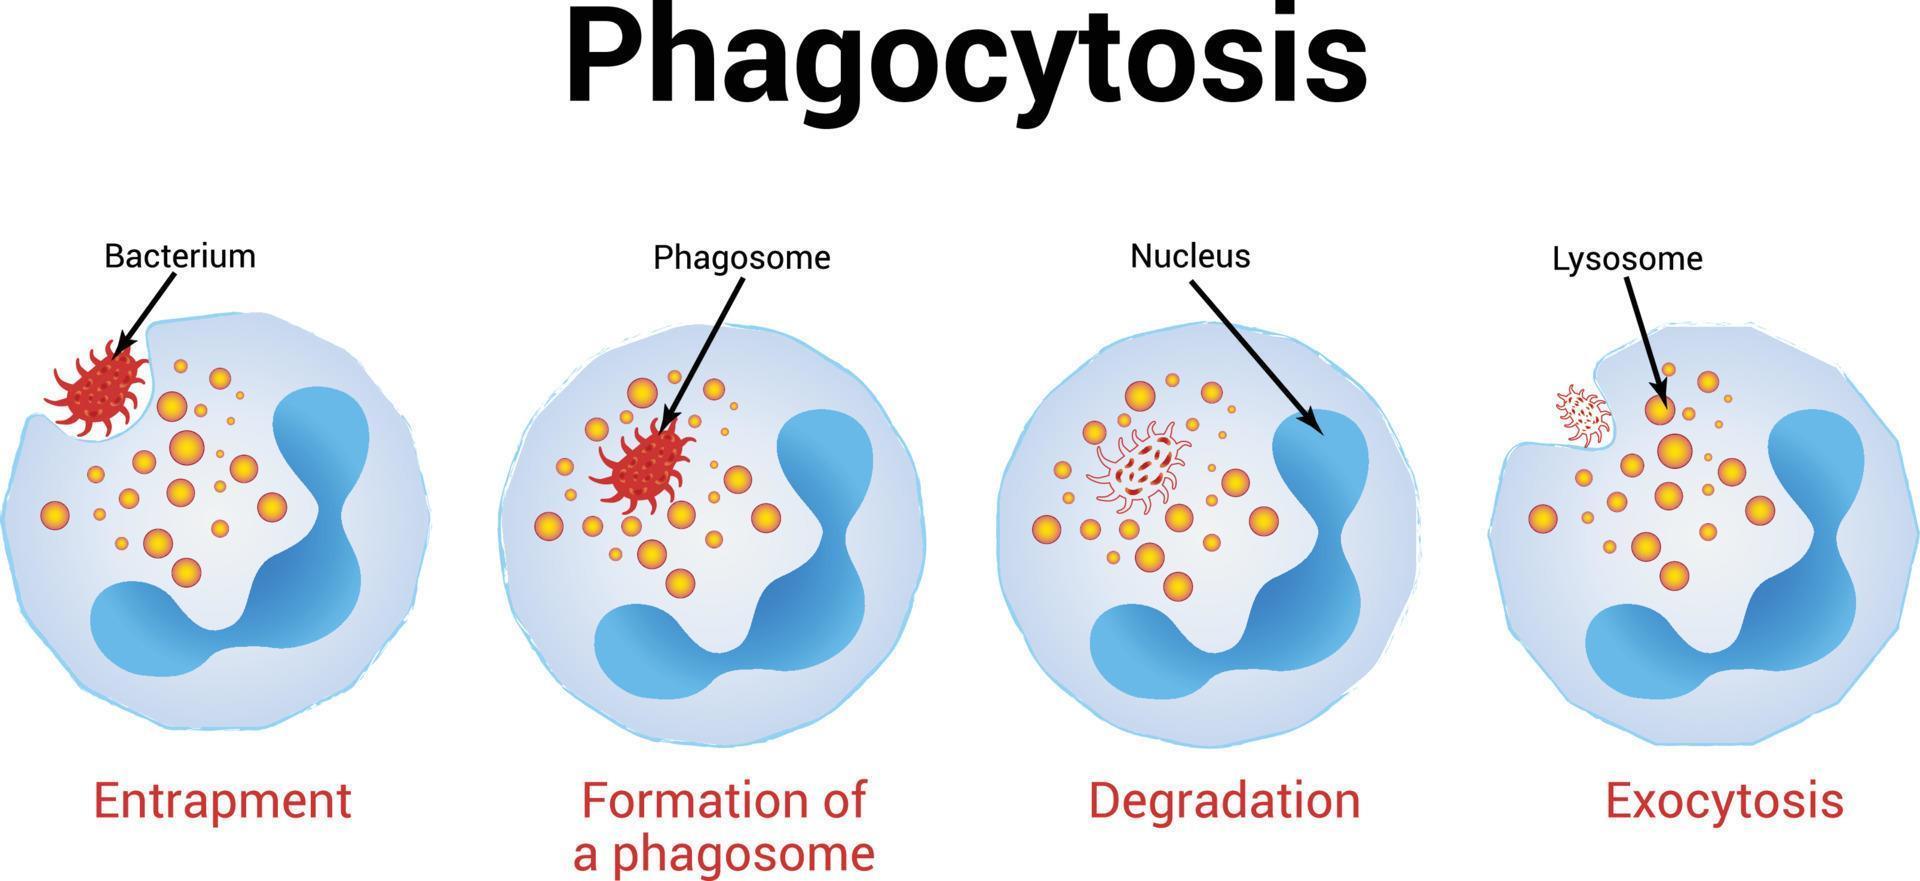 fagocytose vector illustratie, medische illustratie